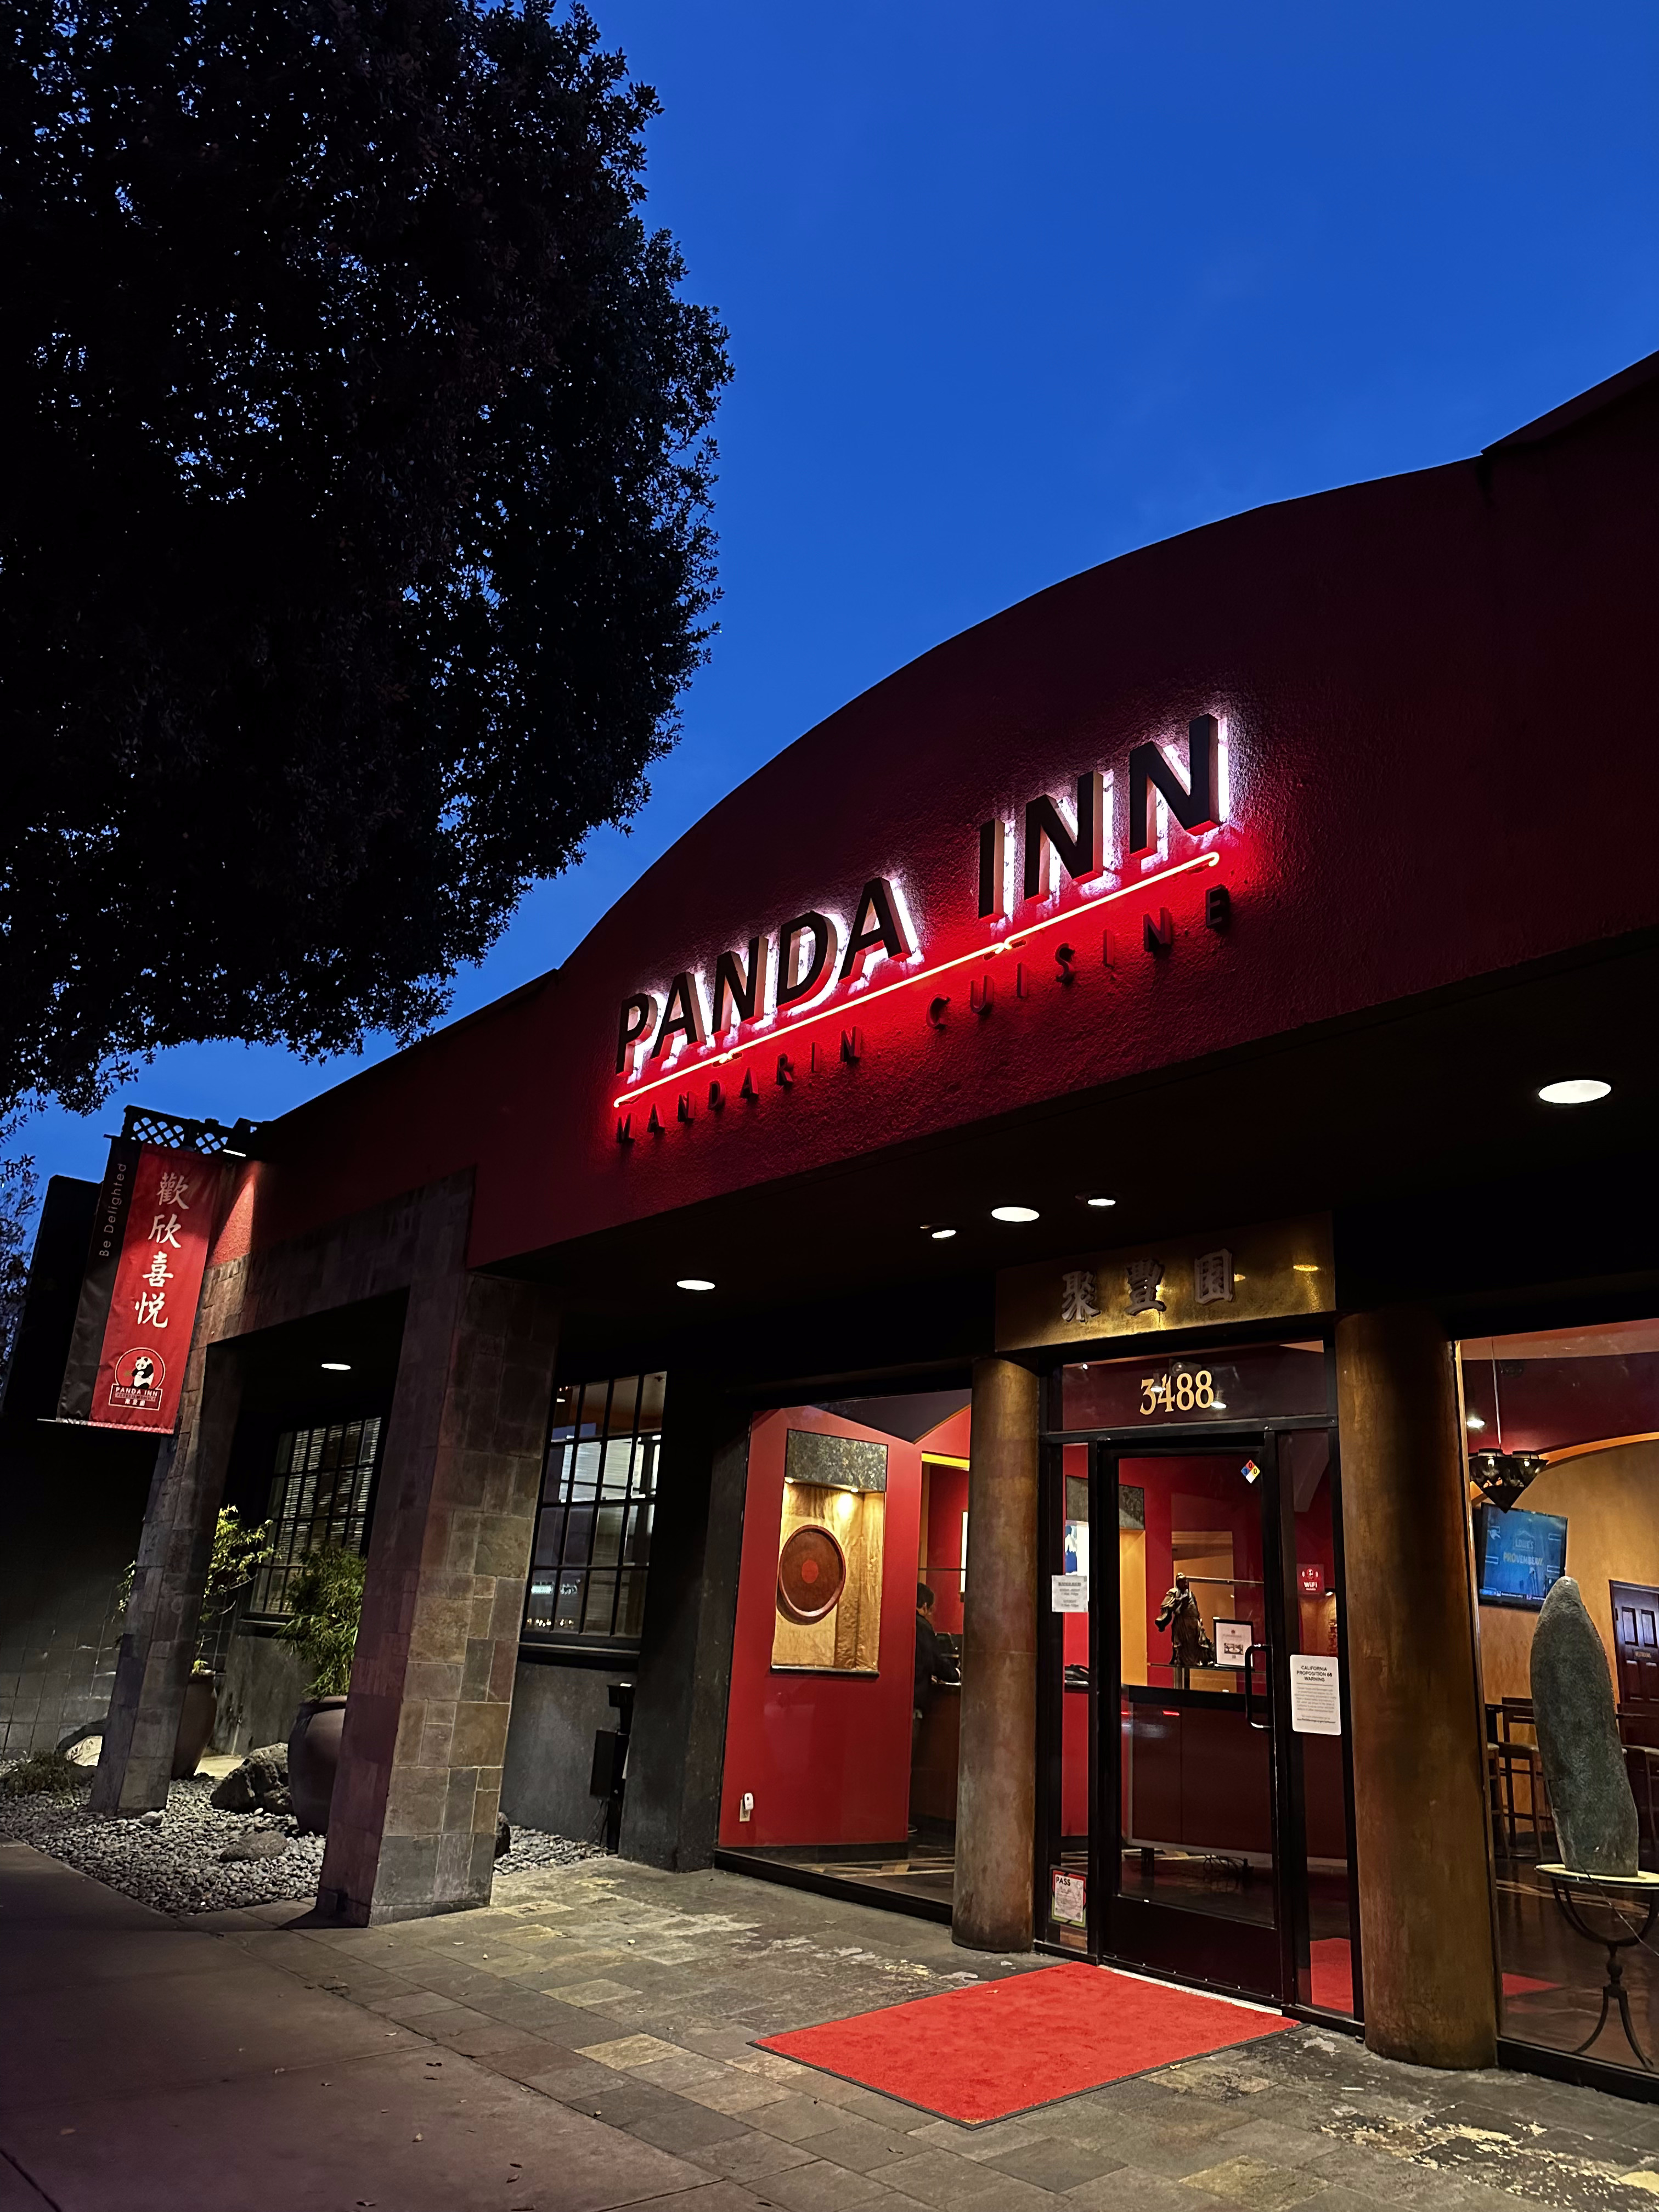 Panda Inn in Pasadena.